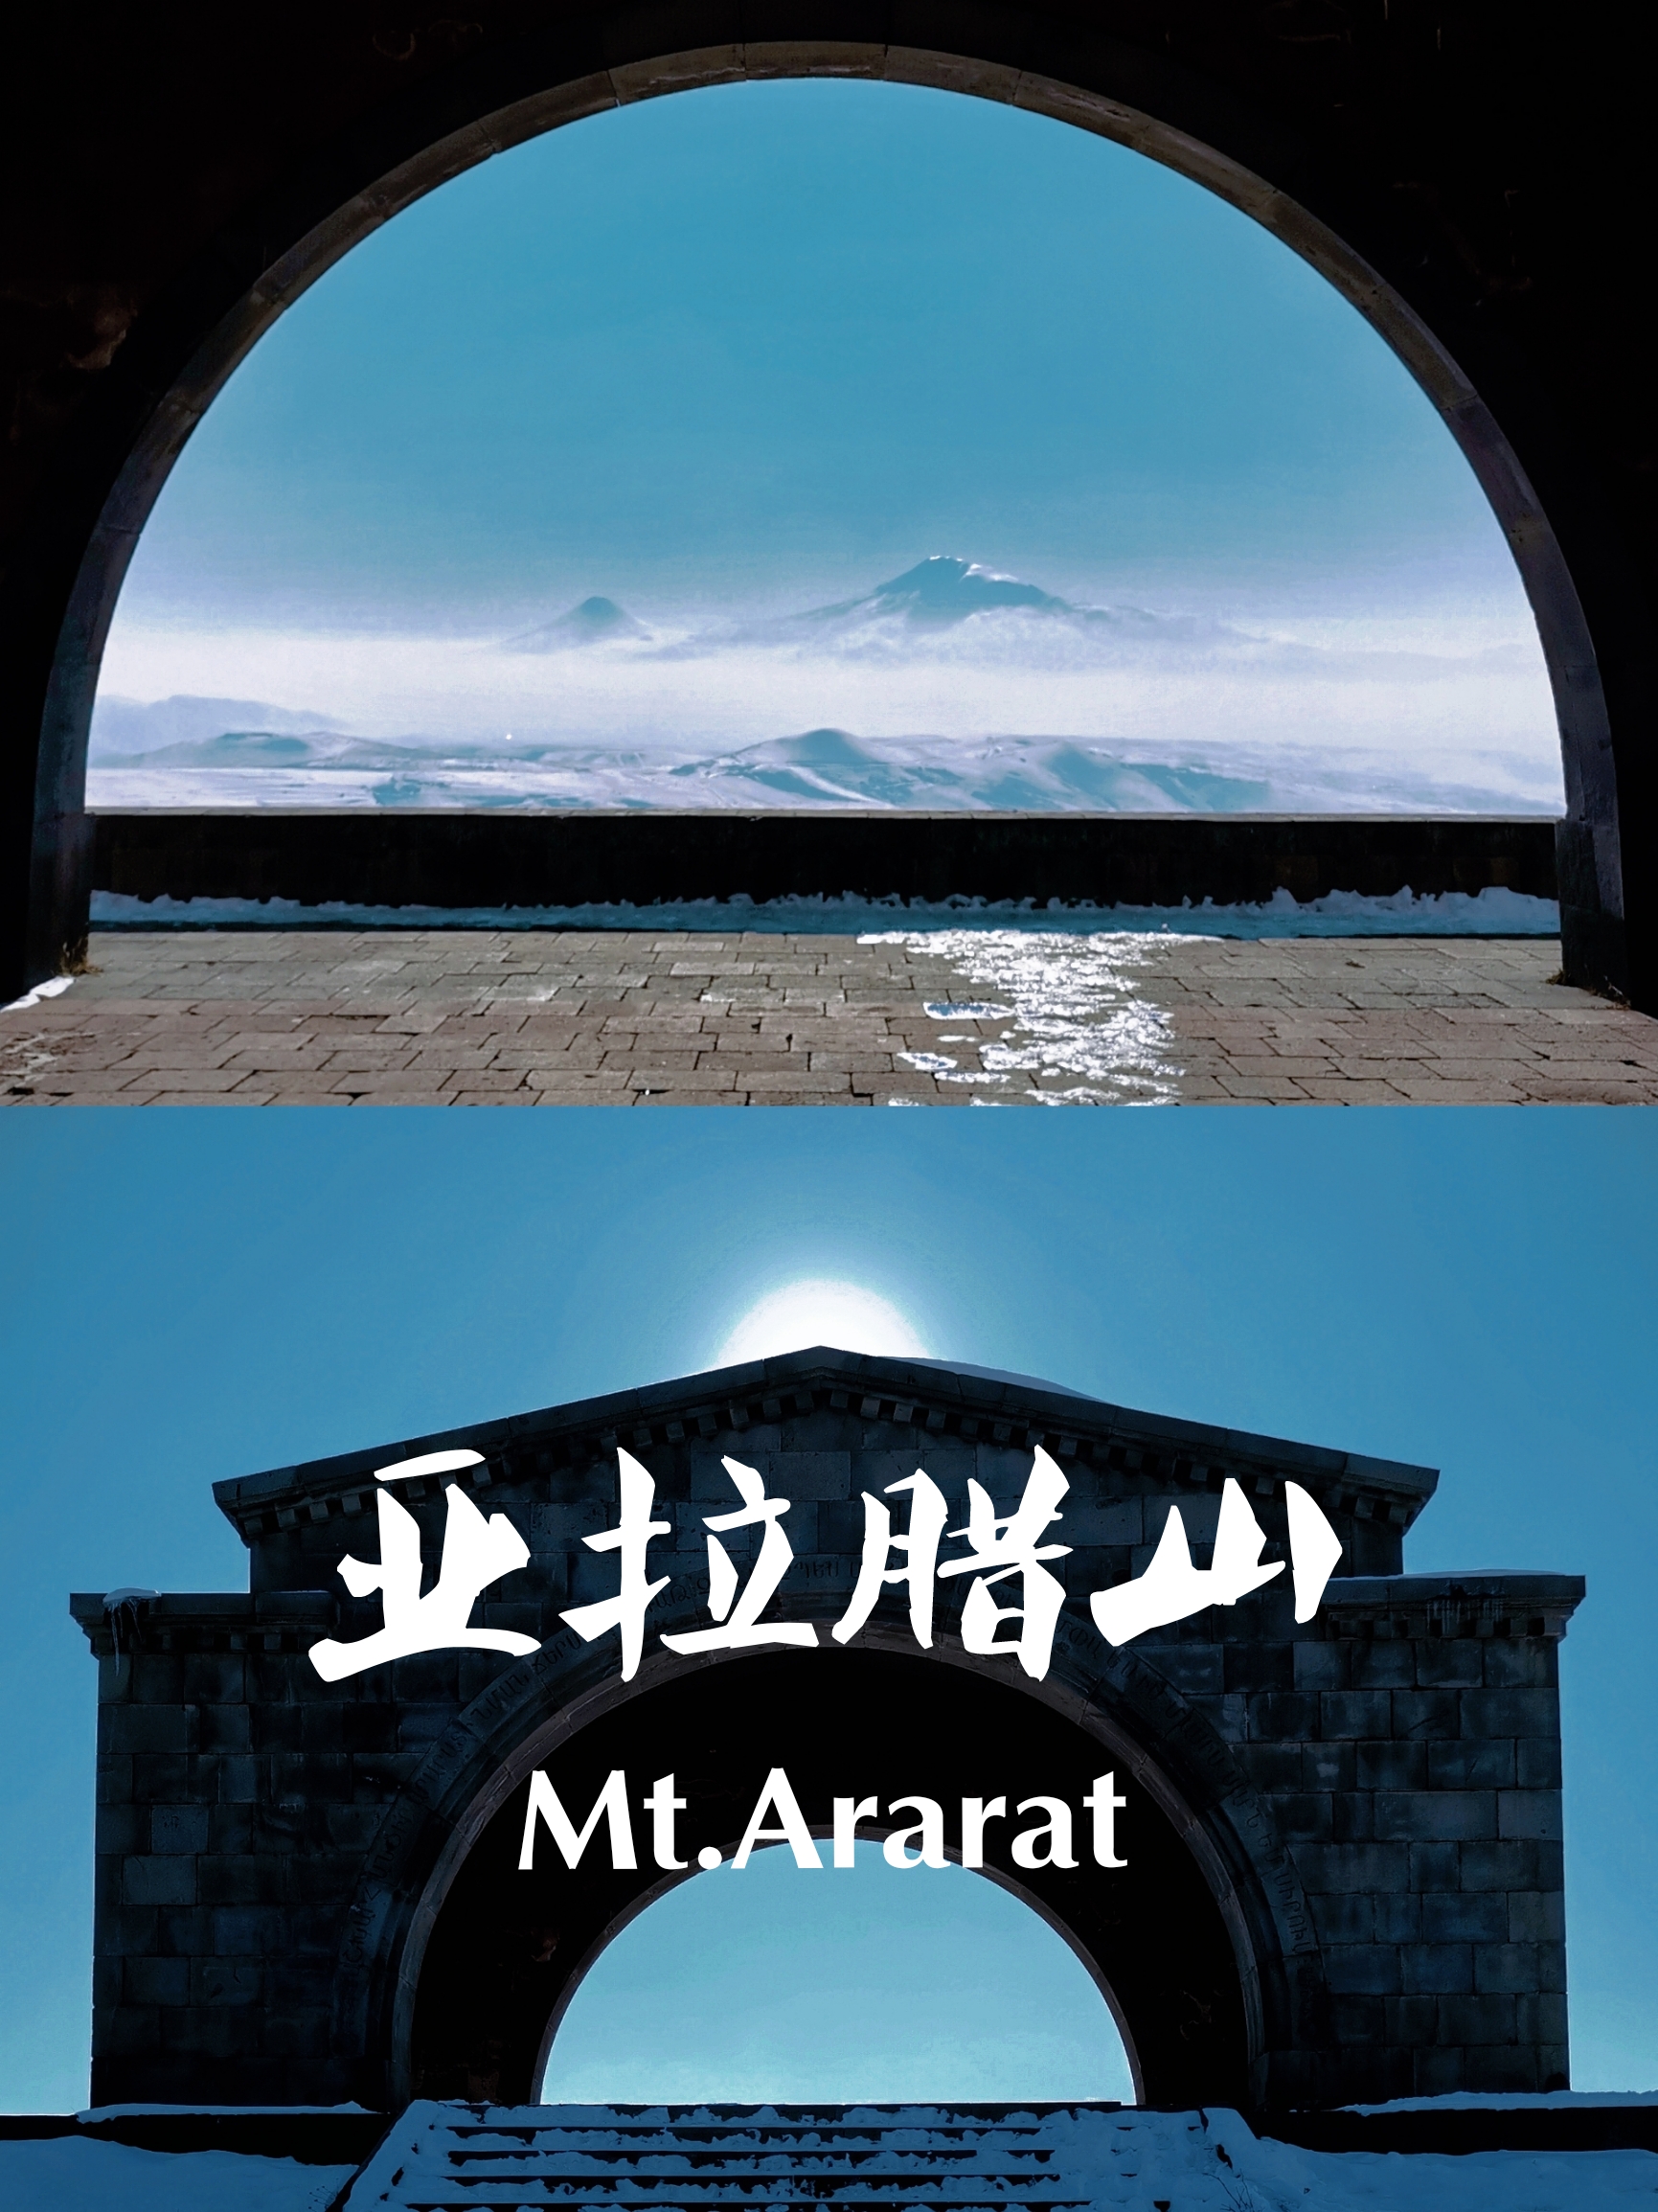 亚拉腊山Ararat传说中诺亚方舟停靠的地方